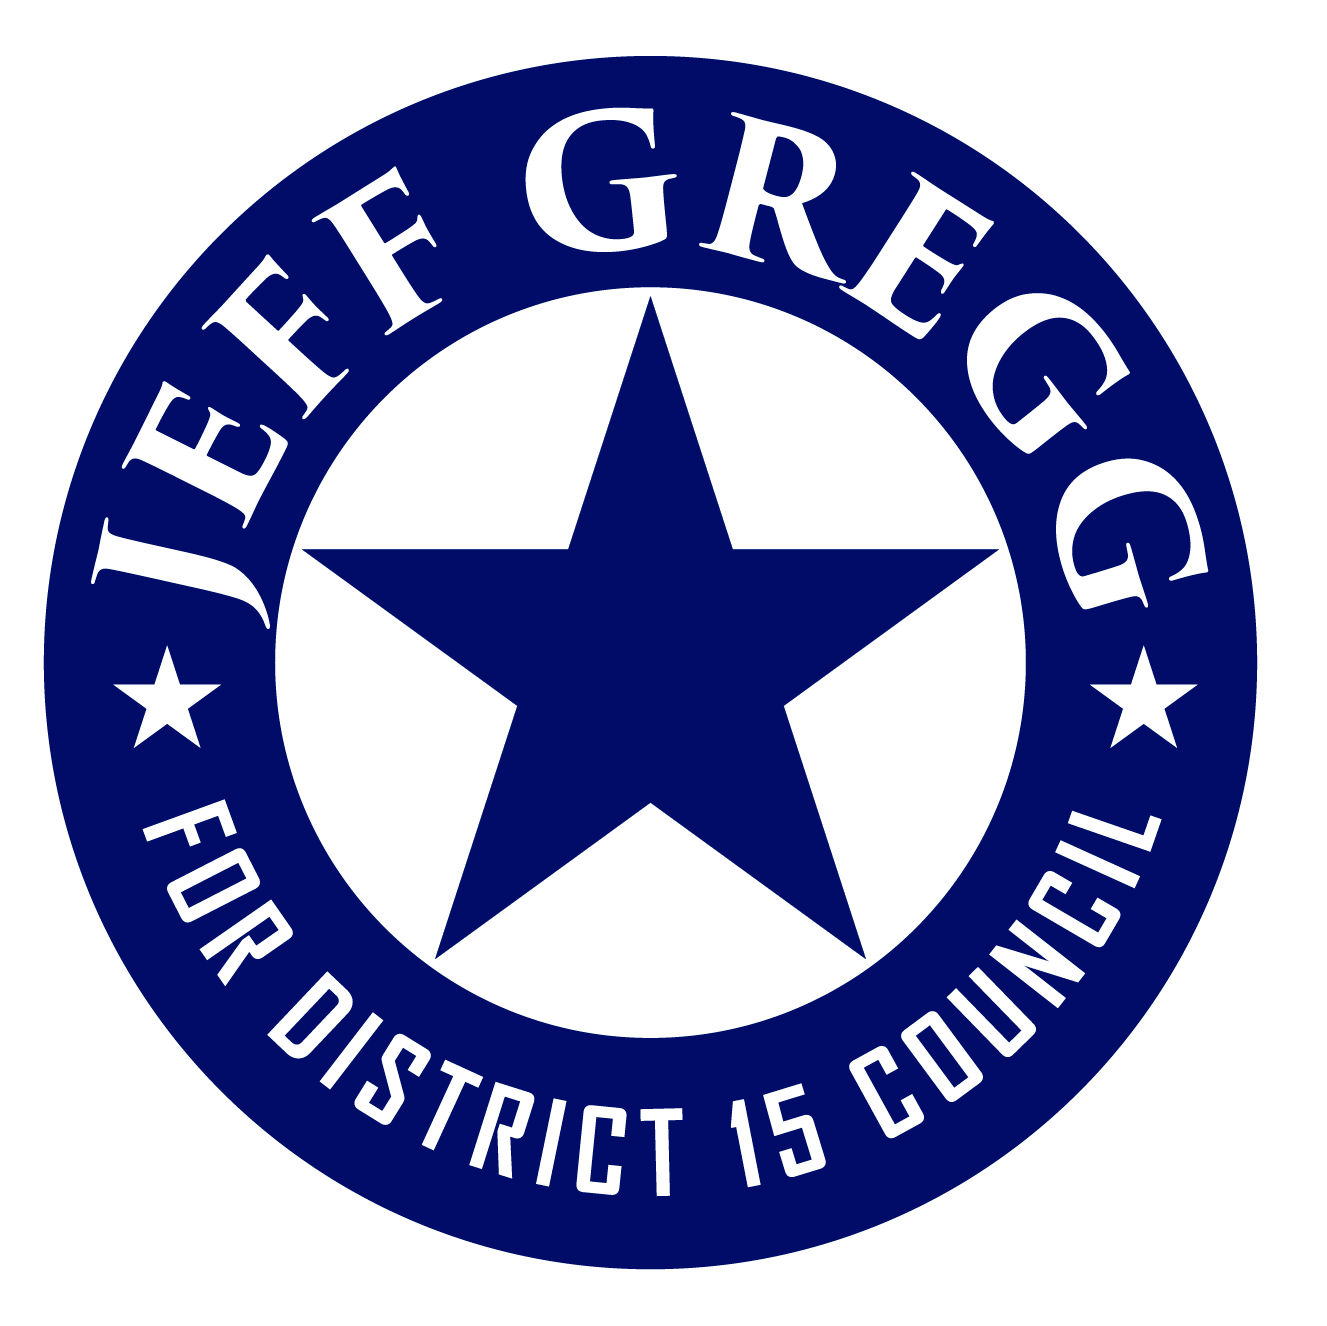 Friends of Jeff Gregg logo